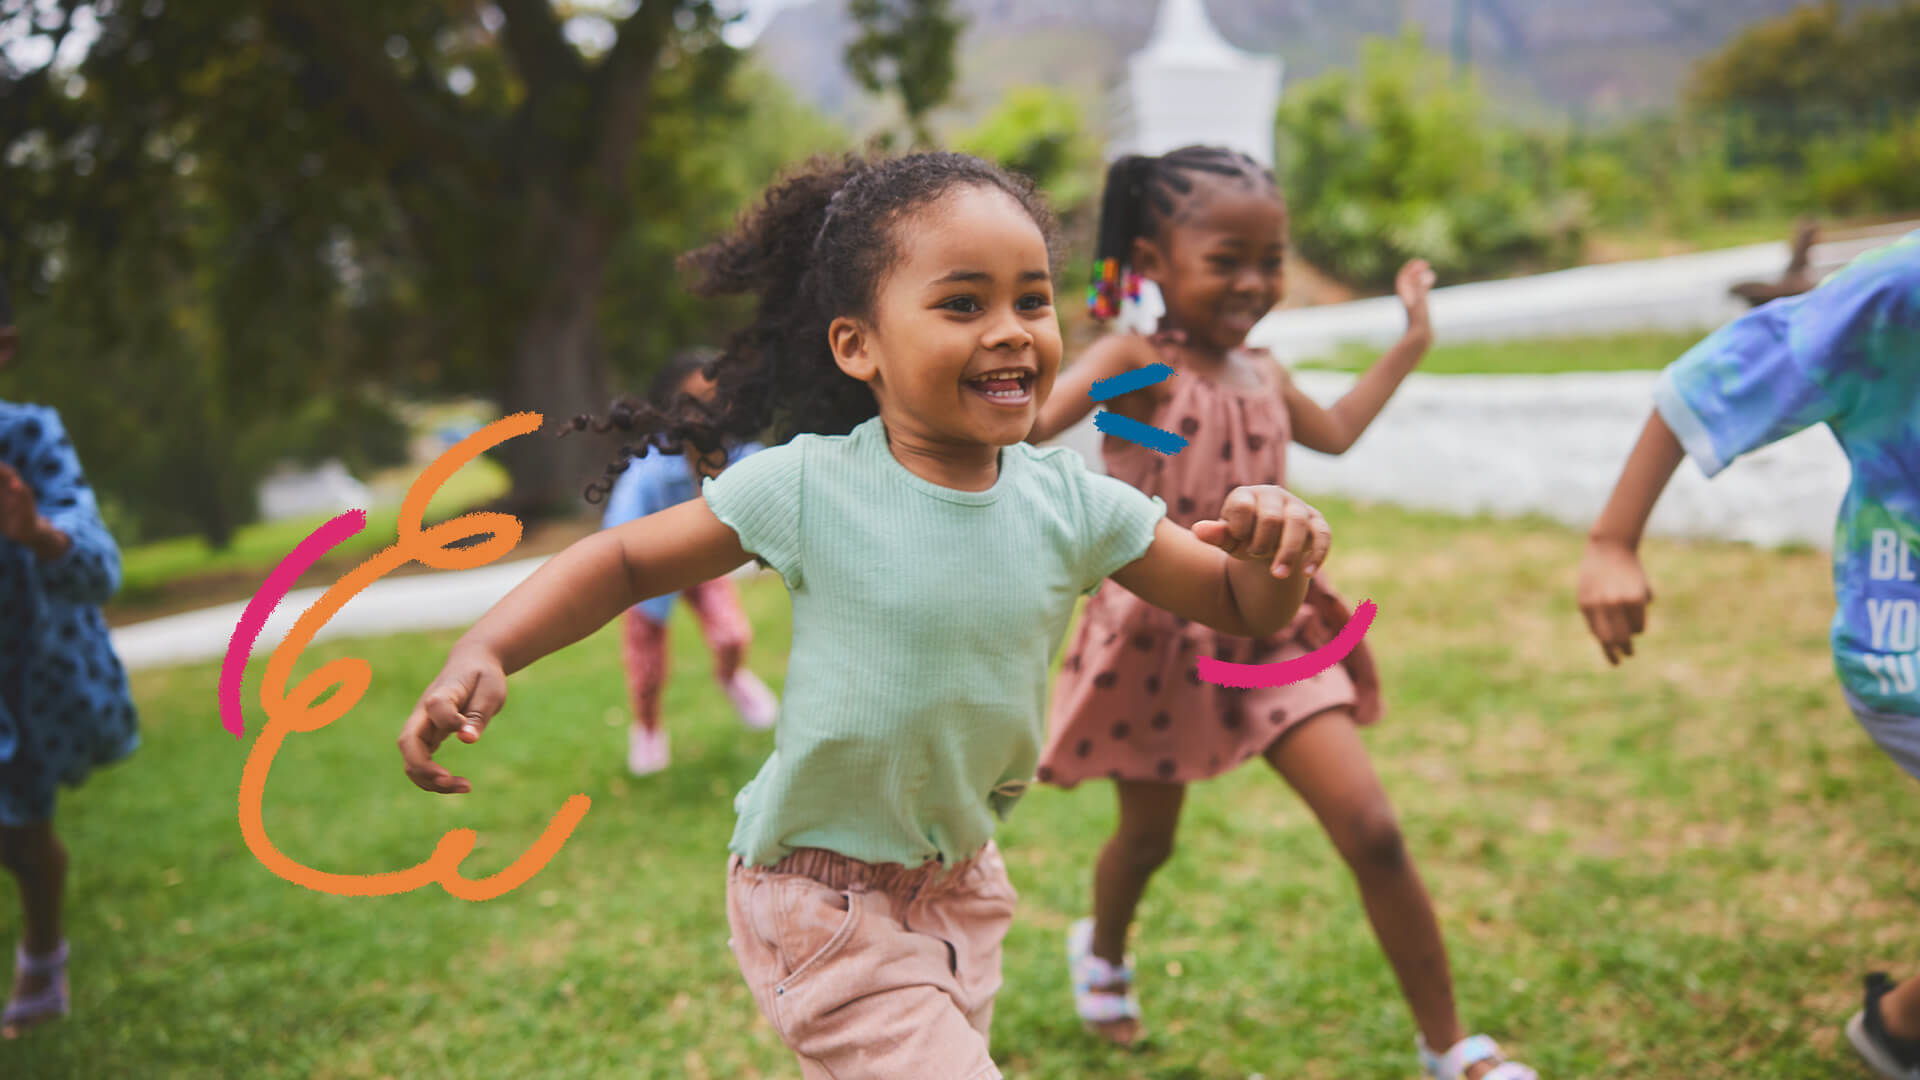 Crianças negras sorriem enquanto correm em um ambiente aberto.